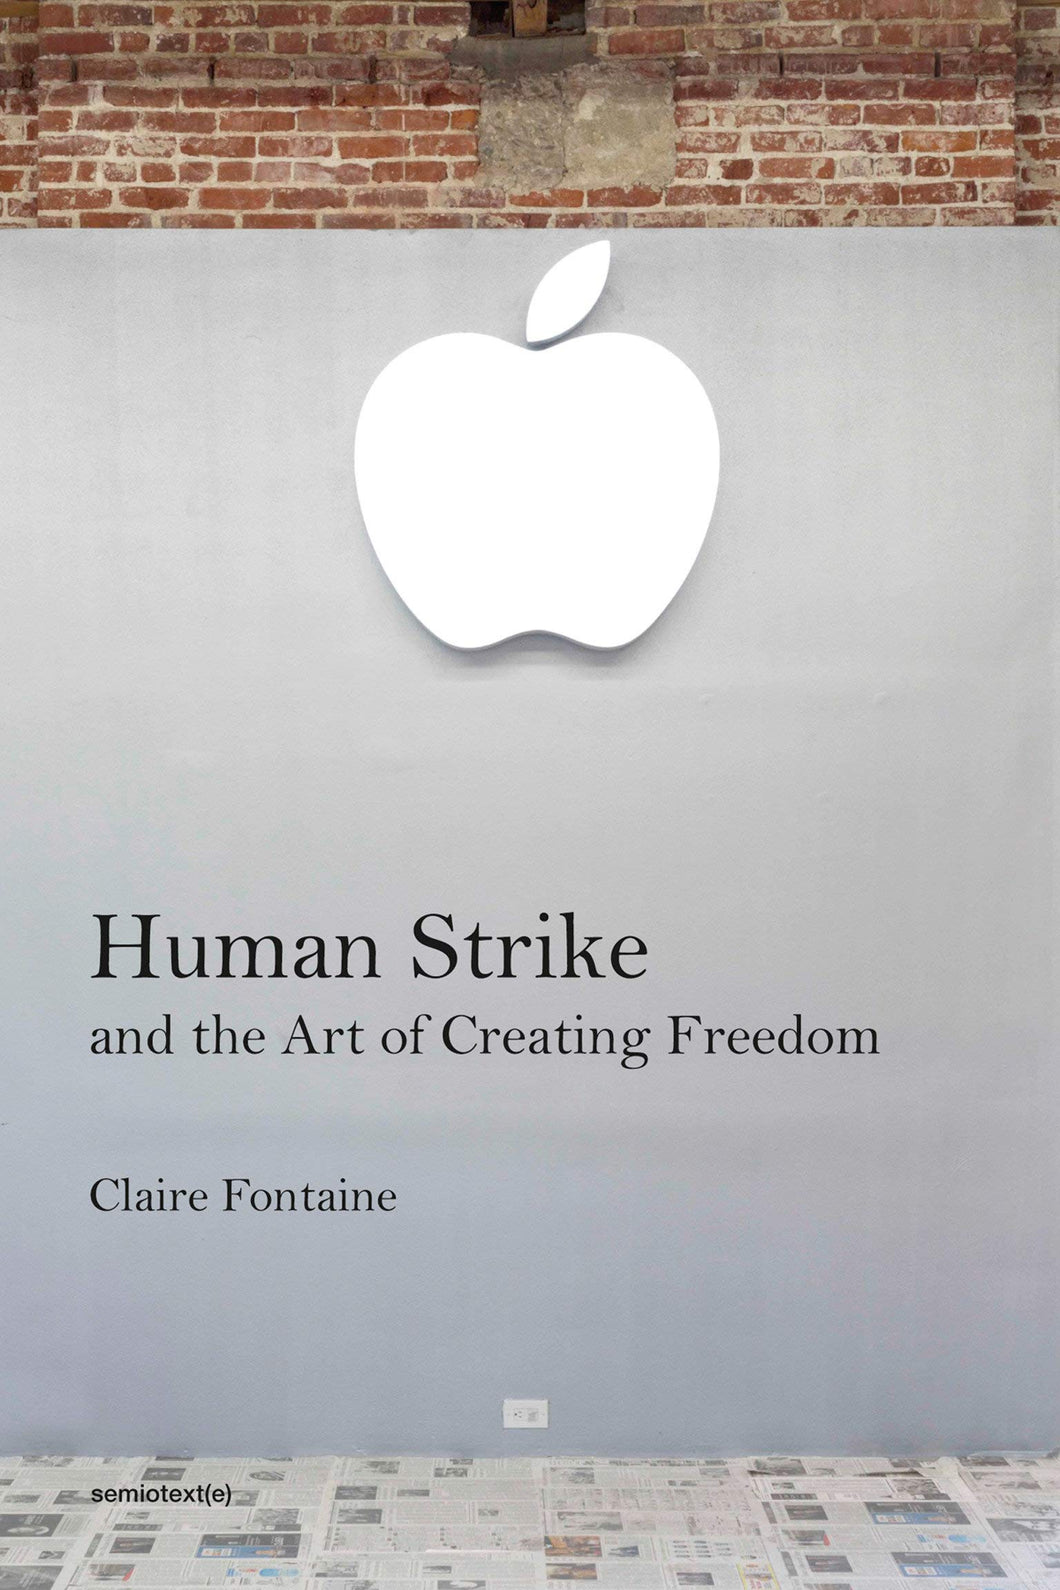 Human Strike and the Art of Creating Freedom ร้านหนังสือและสิ่งของ เป็นร้านหนังสือภาษาอังกฤษหายาก และร้านกาแฟ หรือ บุ๊คคาเฟ่ ตั้งอยู่สุขุมวิท กรุงเทพ